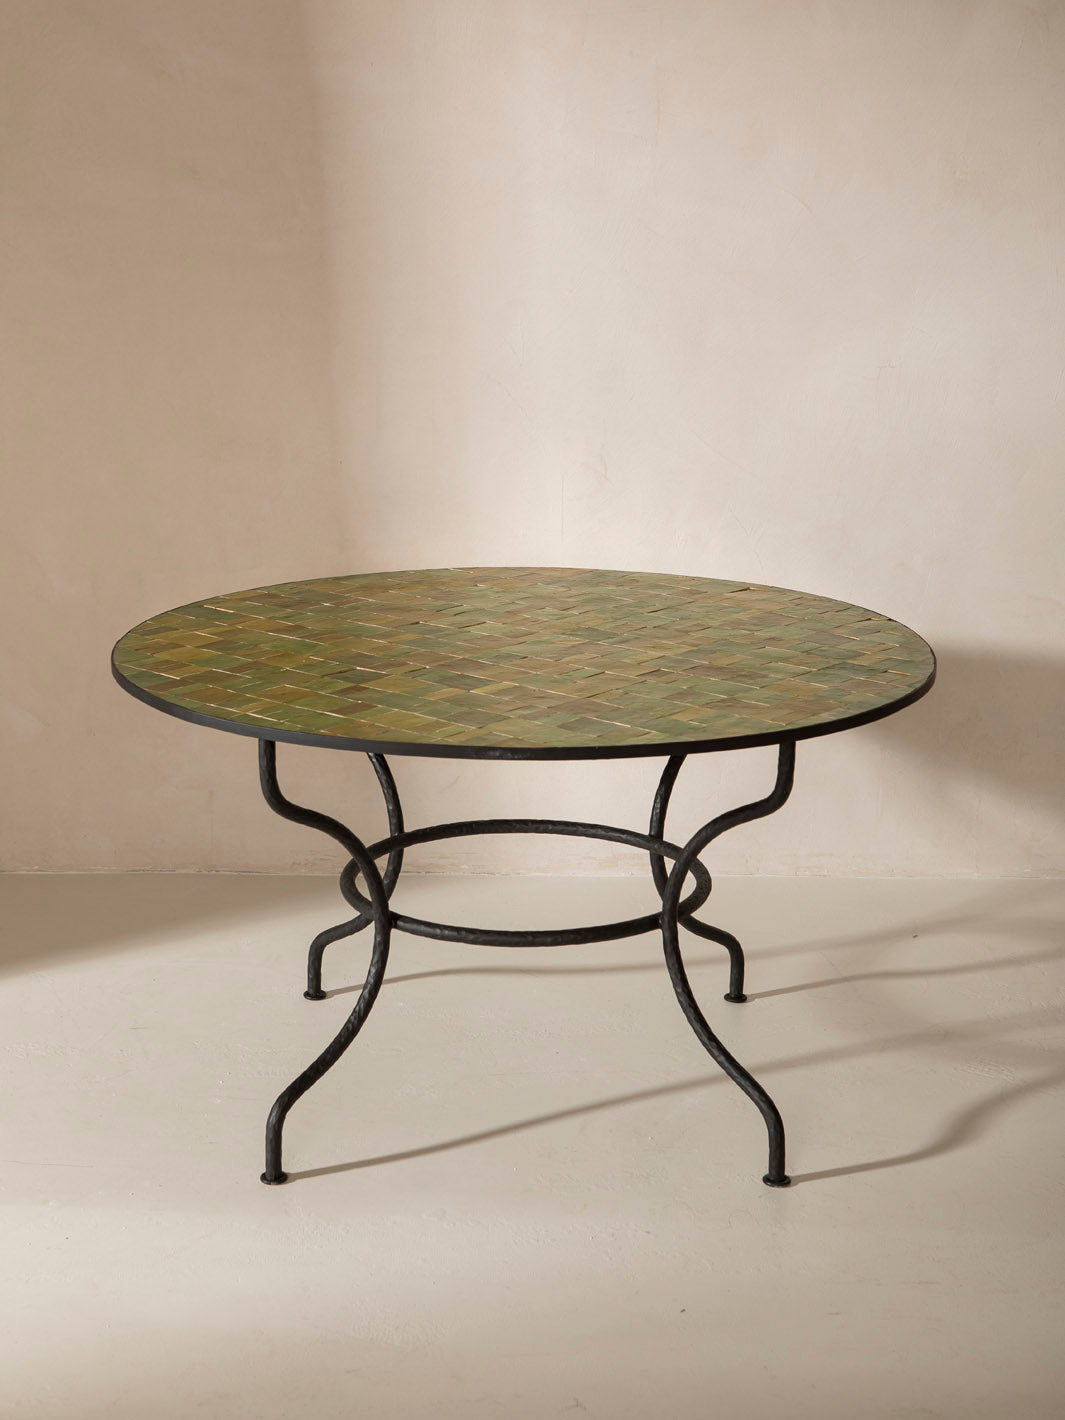 Round Zellige table 130cm diameter x 75cm